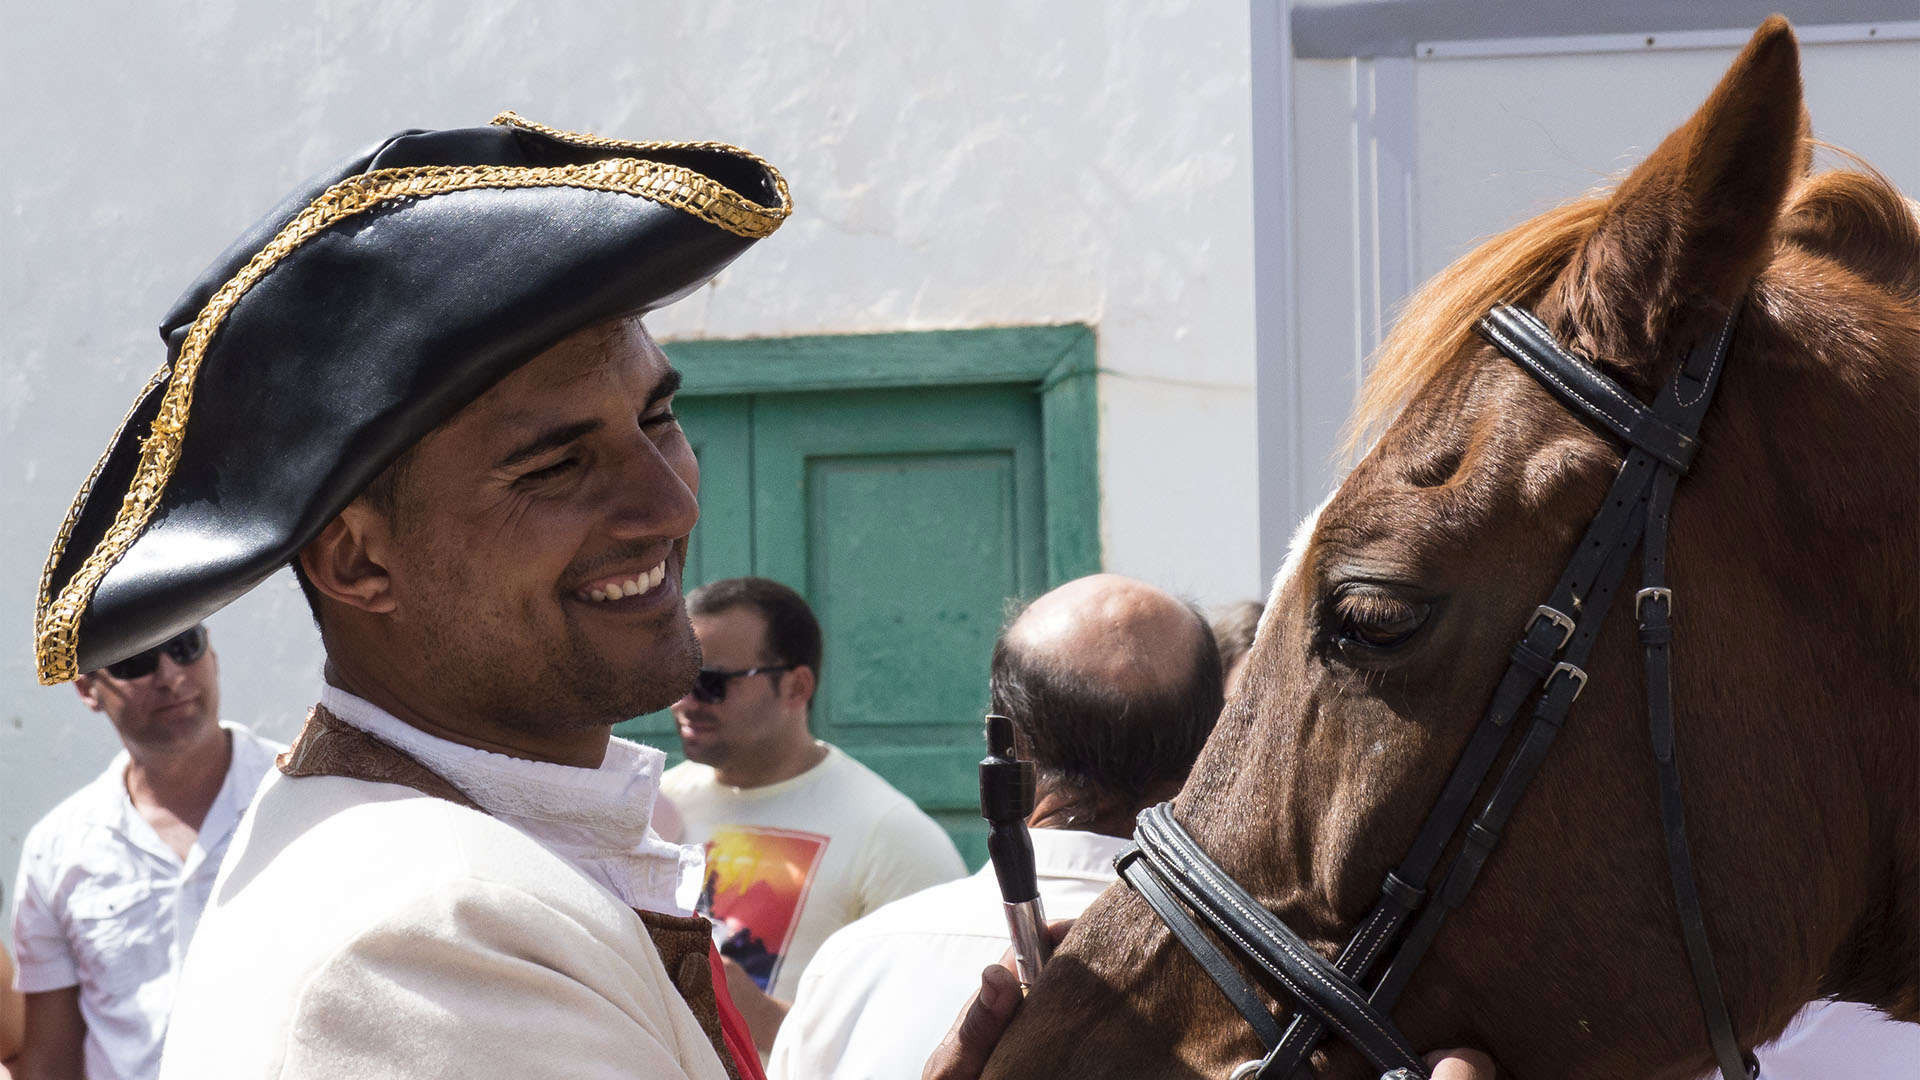 Sehenswürdigkeiten Fuerteventura – Tuineje Fiesta San Miguel – Batallas del Cuchillete y Tamasite.